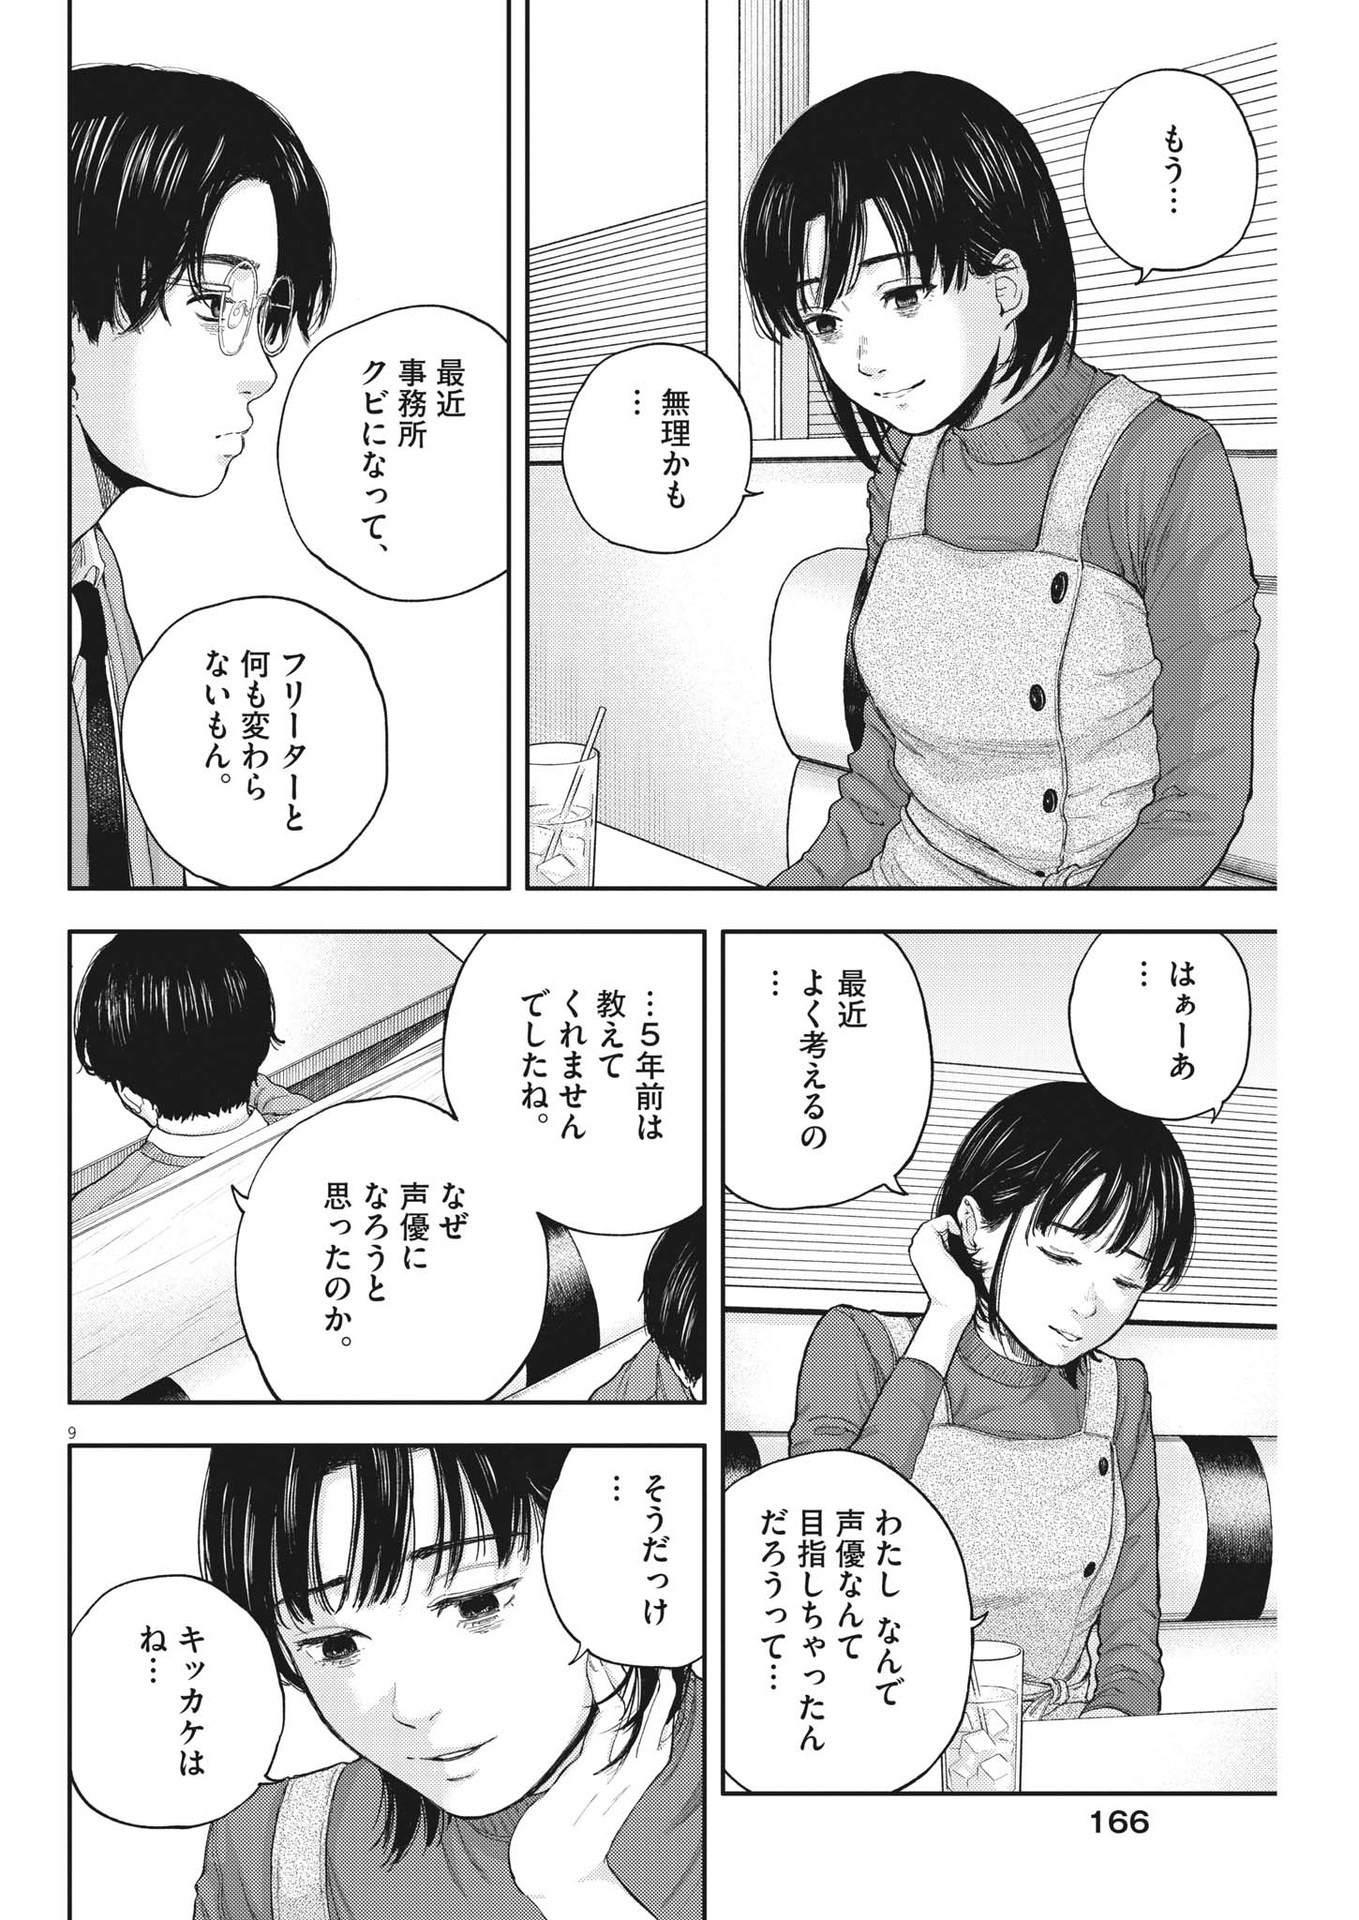 Yumenashi-sensei no Shinroshidou - Chapter 2 - Page 9